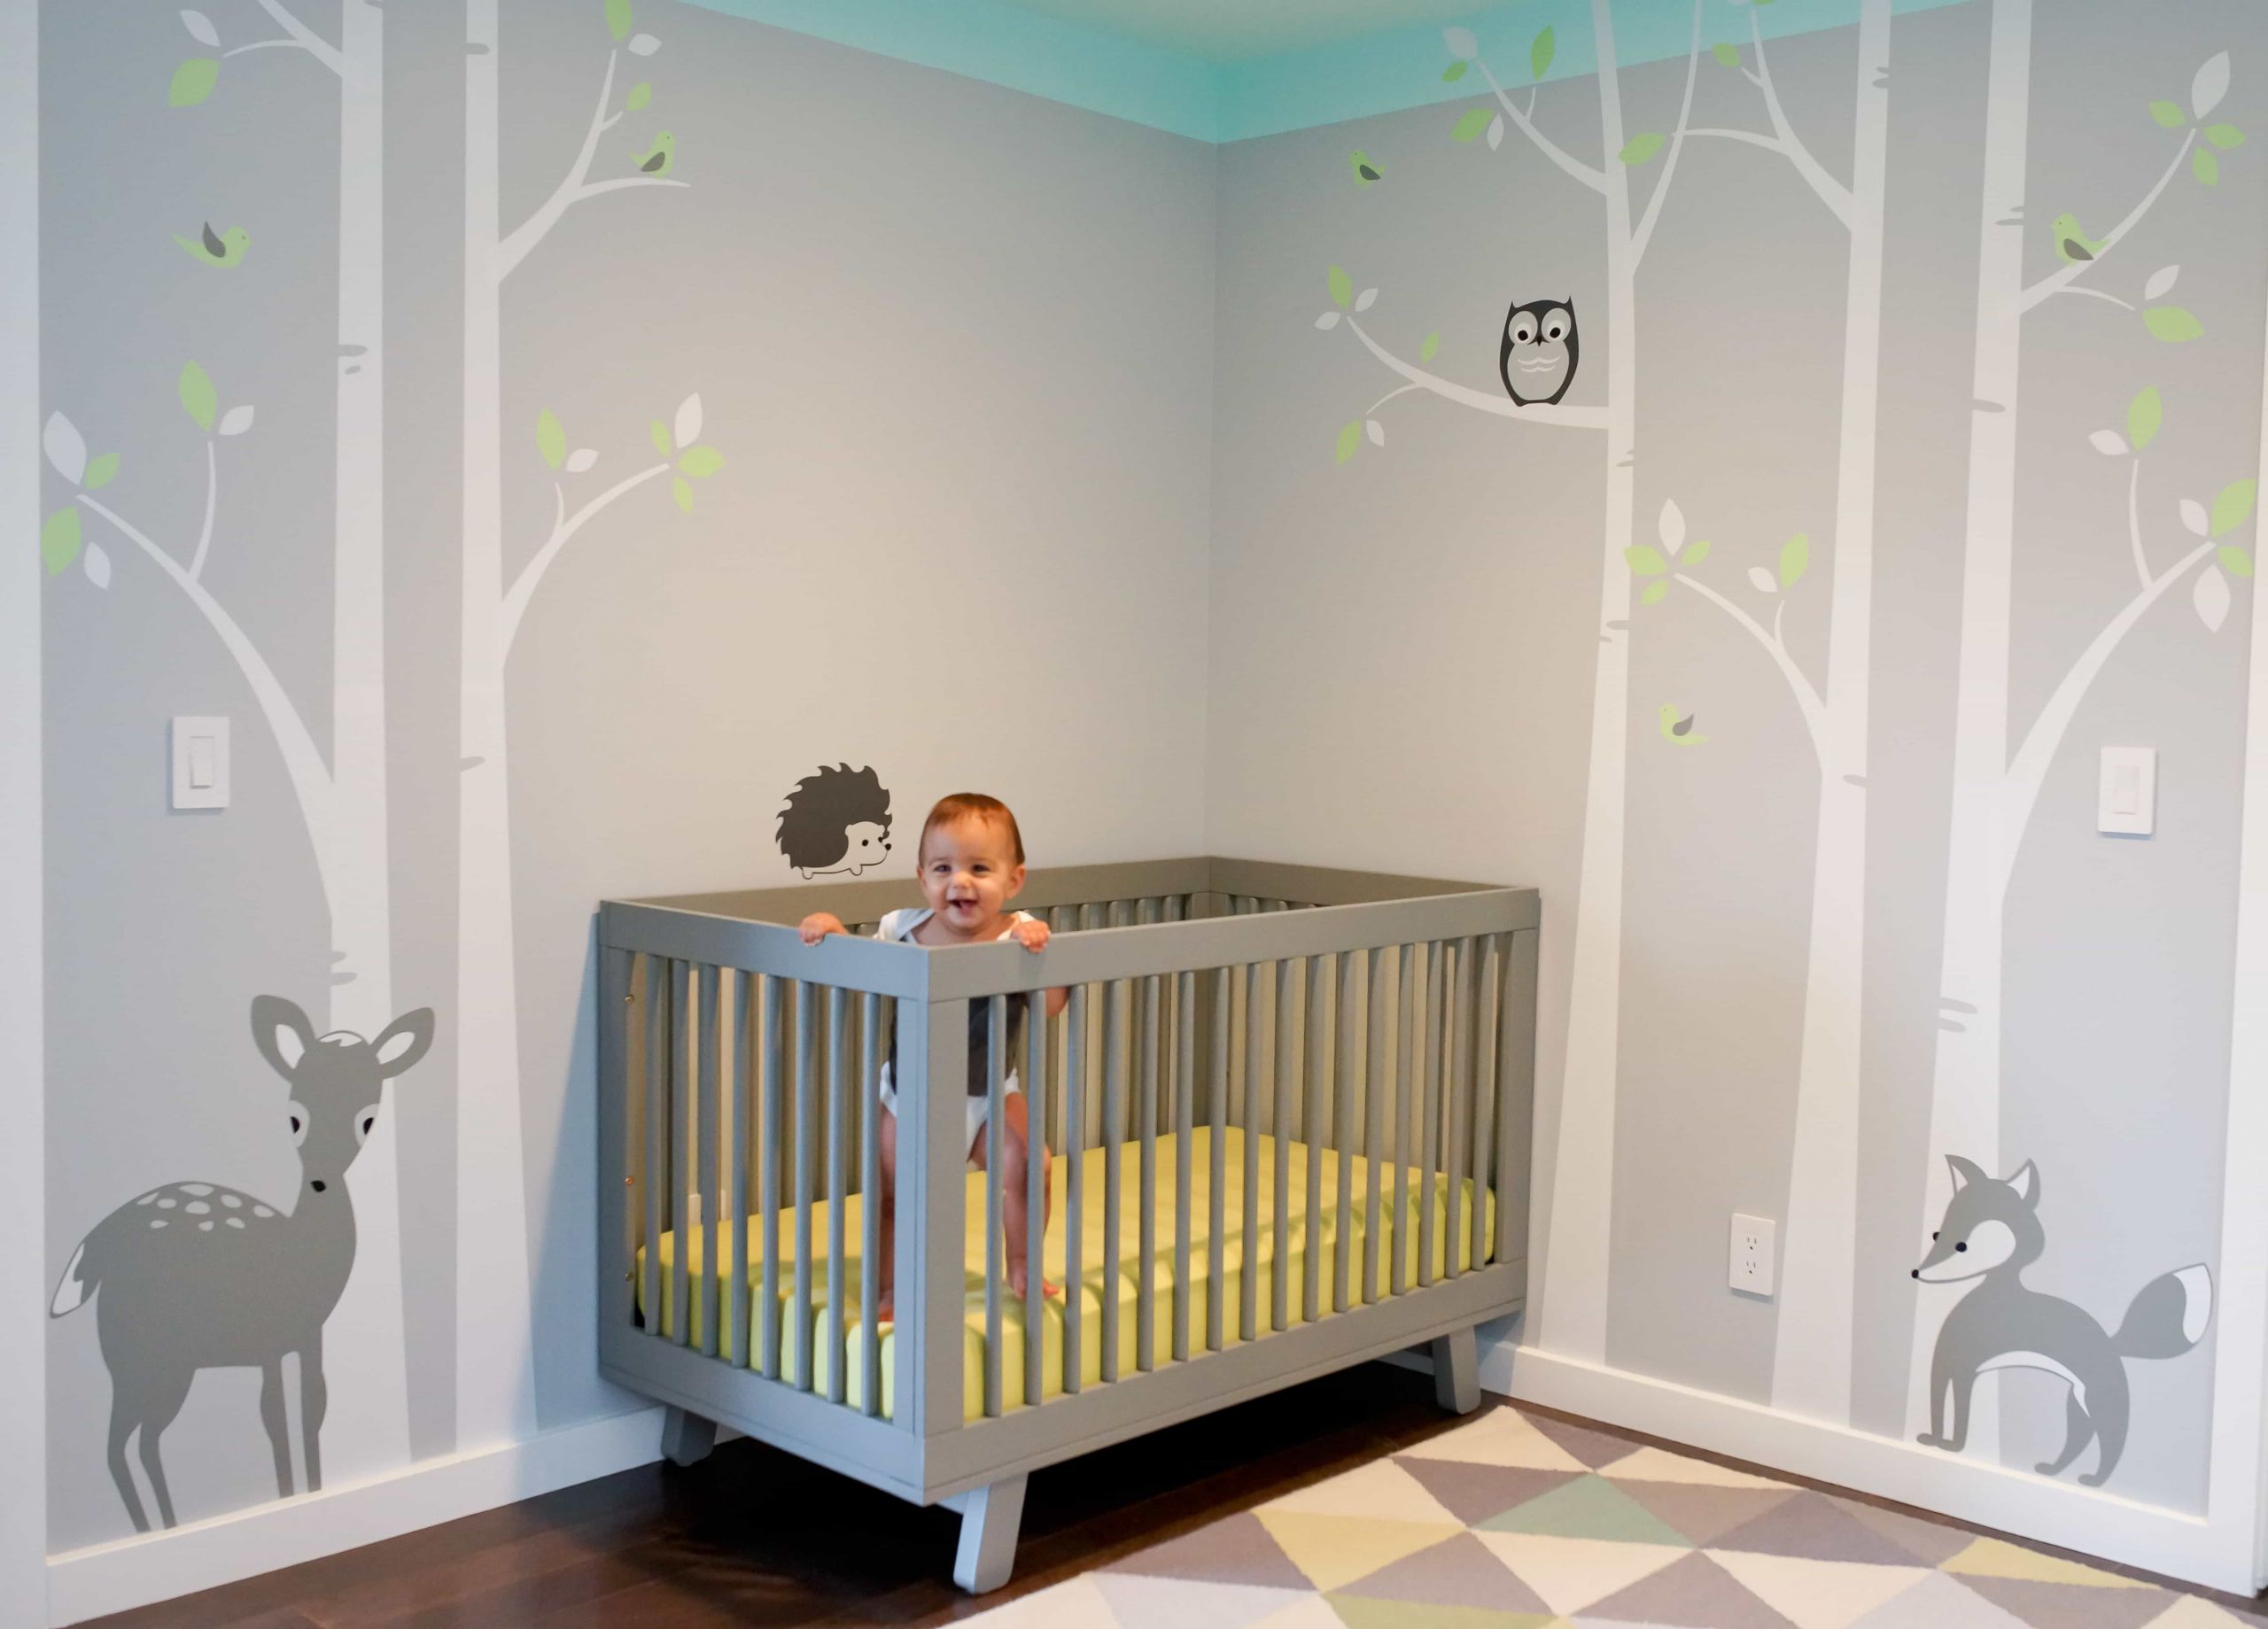 Baby Room Wall Decor Ideas
 Minimalist Nursery Bedroom Furniture Design Ideas 5606